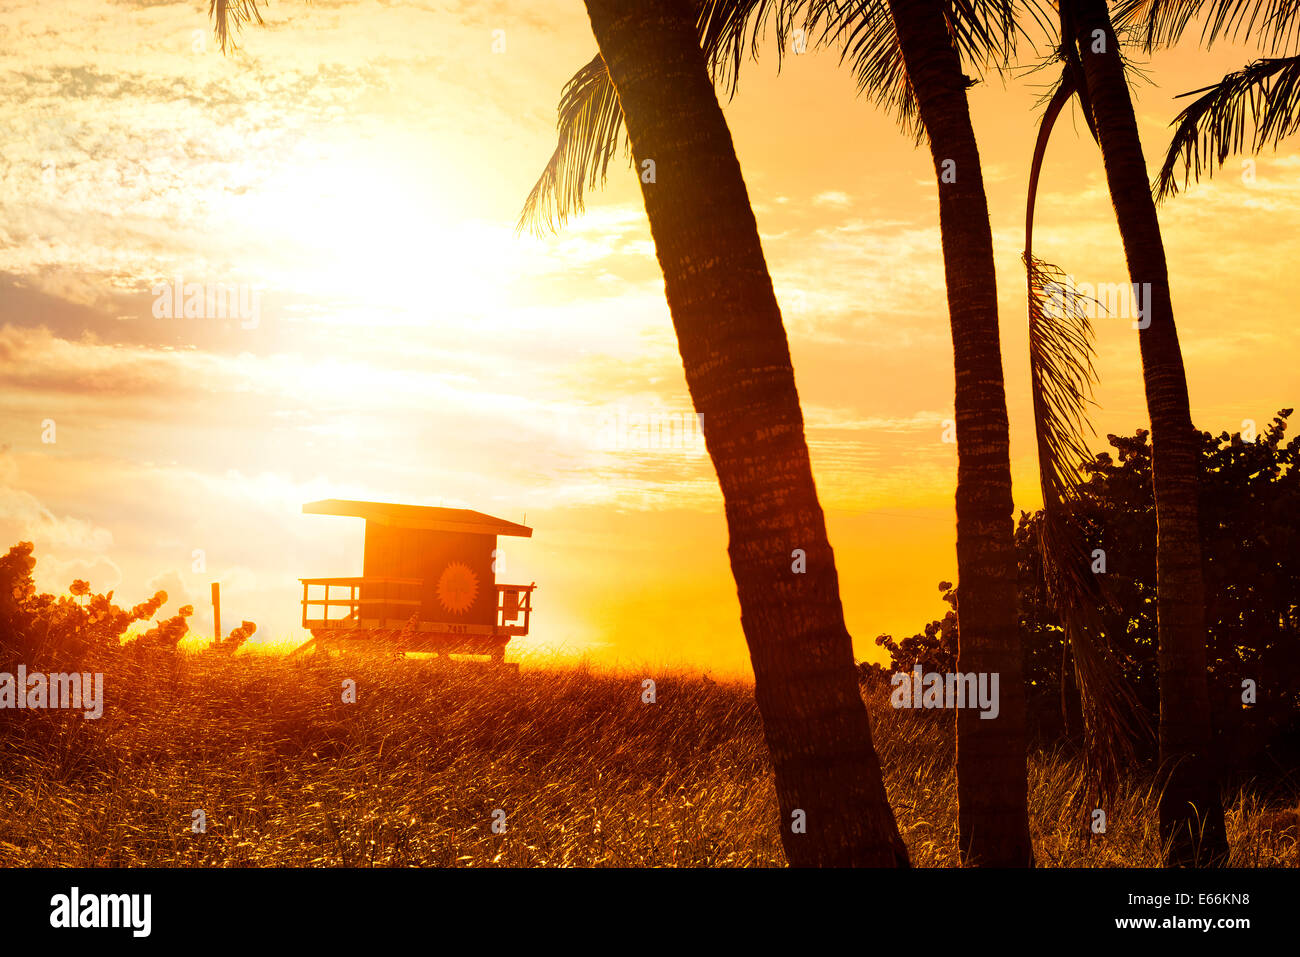 Miami South Beach sunrise avec lifeguard tower et palm tree Banque D'Images